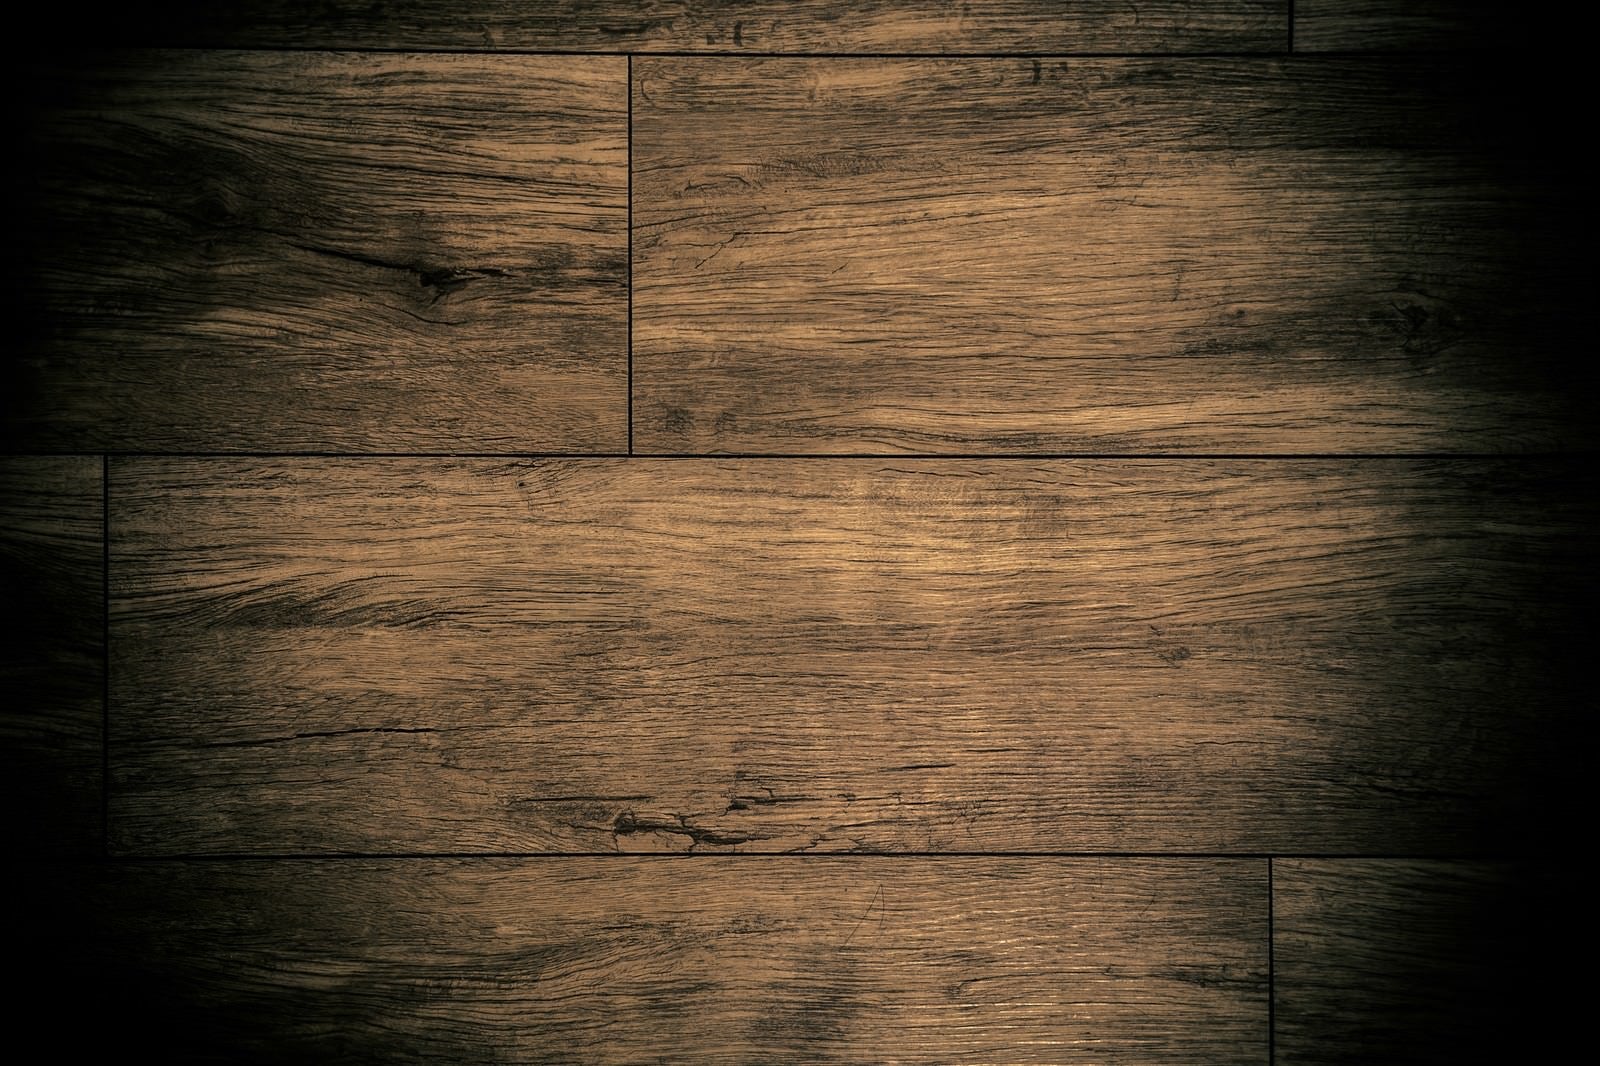 「呪われた床」の写真